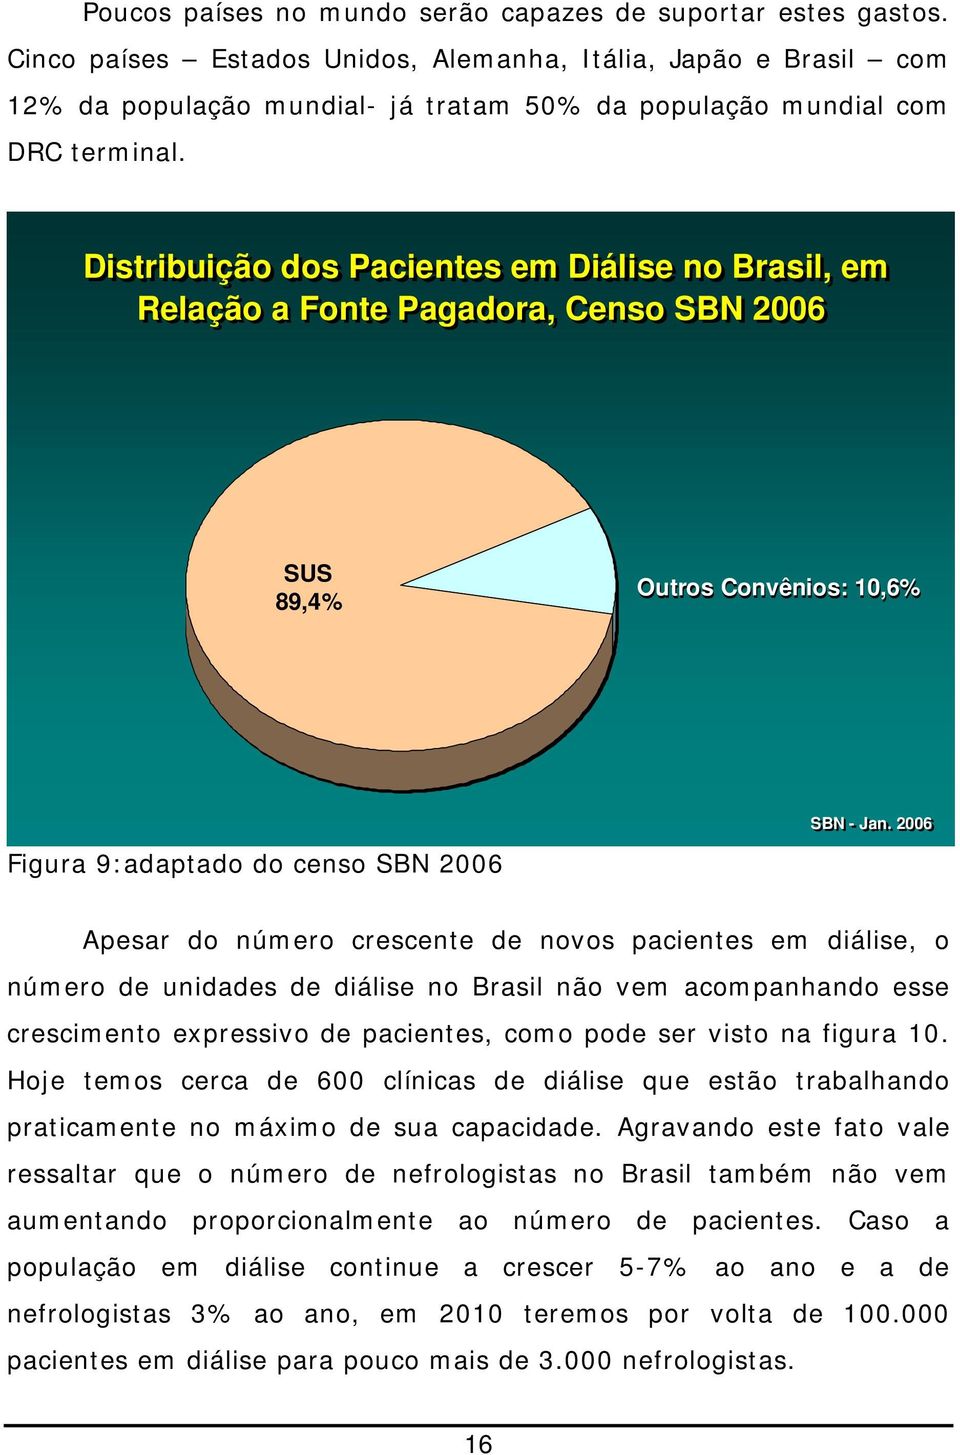 Distribuição dos Pacientes em Diálise no Brasil, em Relação a Fonte Pagadora, Censo SBN 2006 SUS 89,4% Outros Convênios: 10,6% Figura 9:adaptado do censo SBN 2006 SBN - Jan.